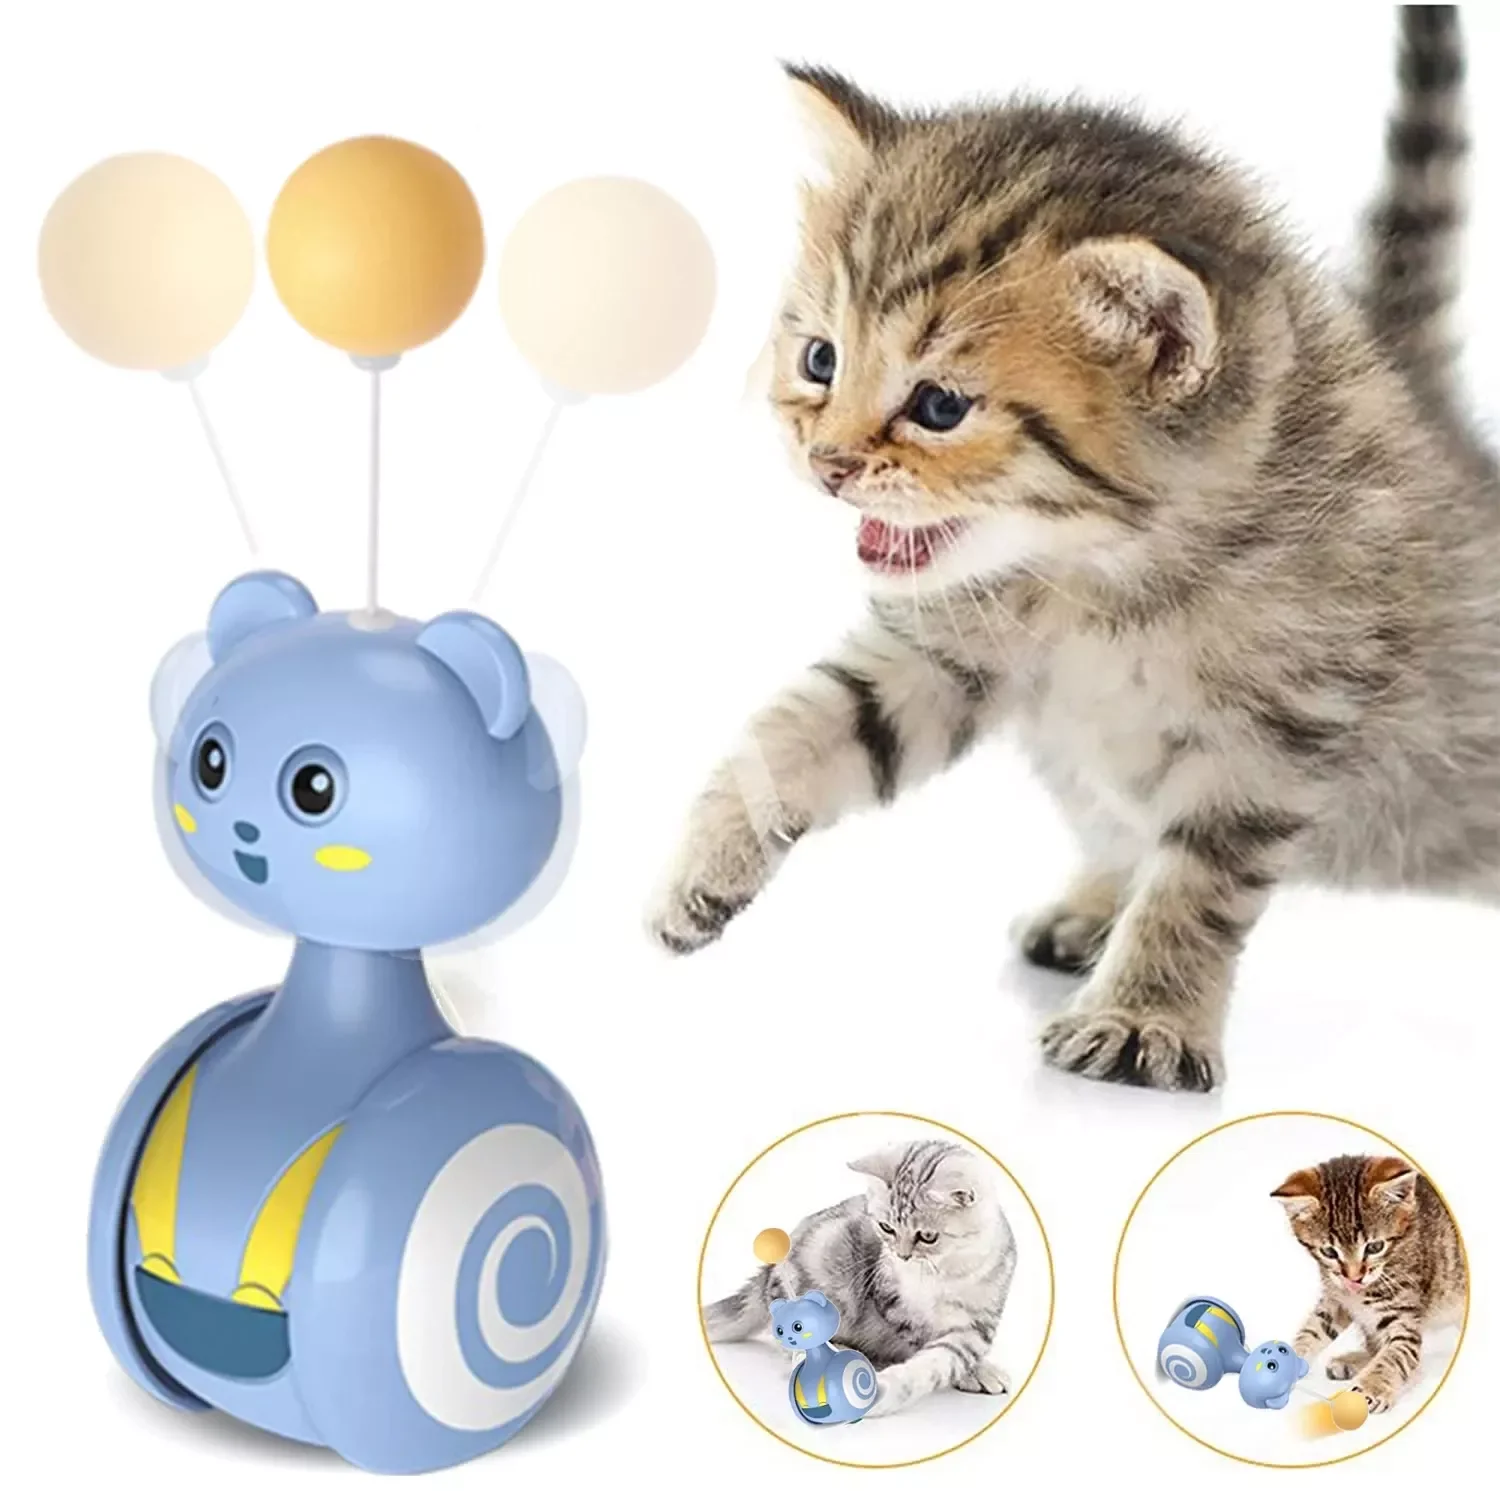 Игрушка-неваляшка для кошек, автоматическая фотобалансировка, Интерактивная игрушка для котят, игрушка с перьевым шаром, Аксессуары для ко...